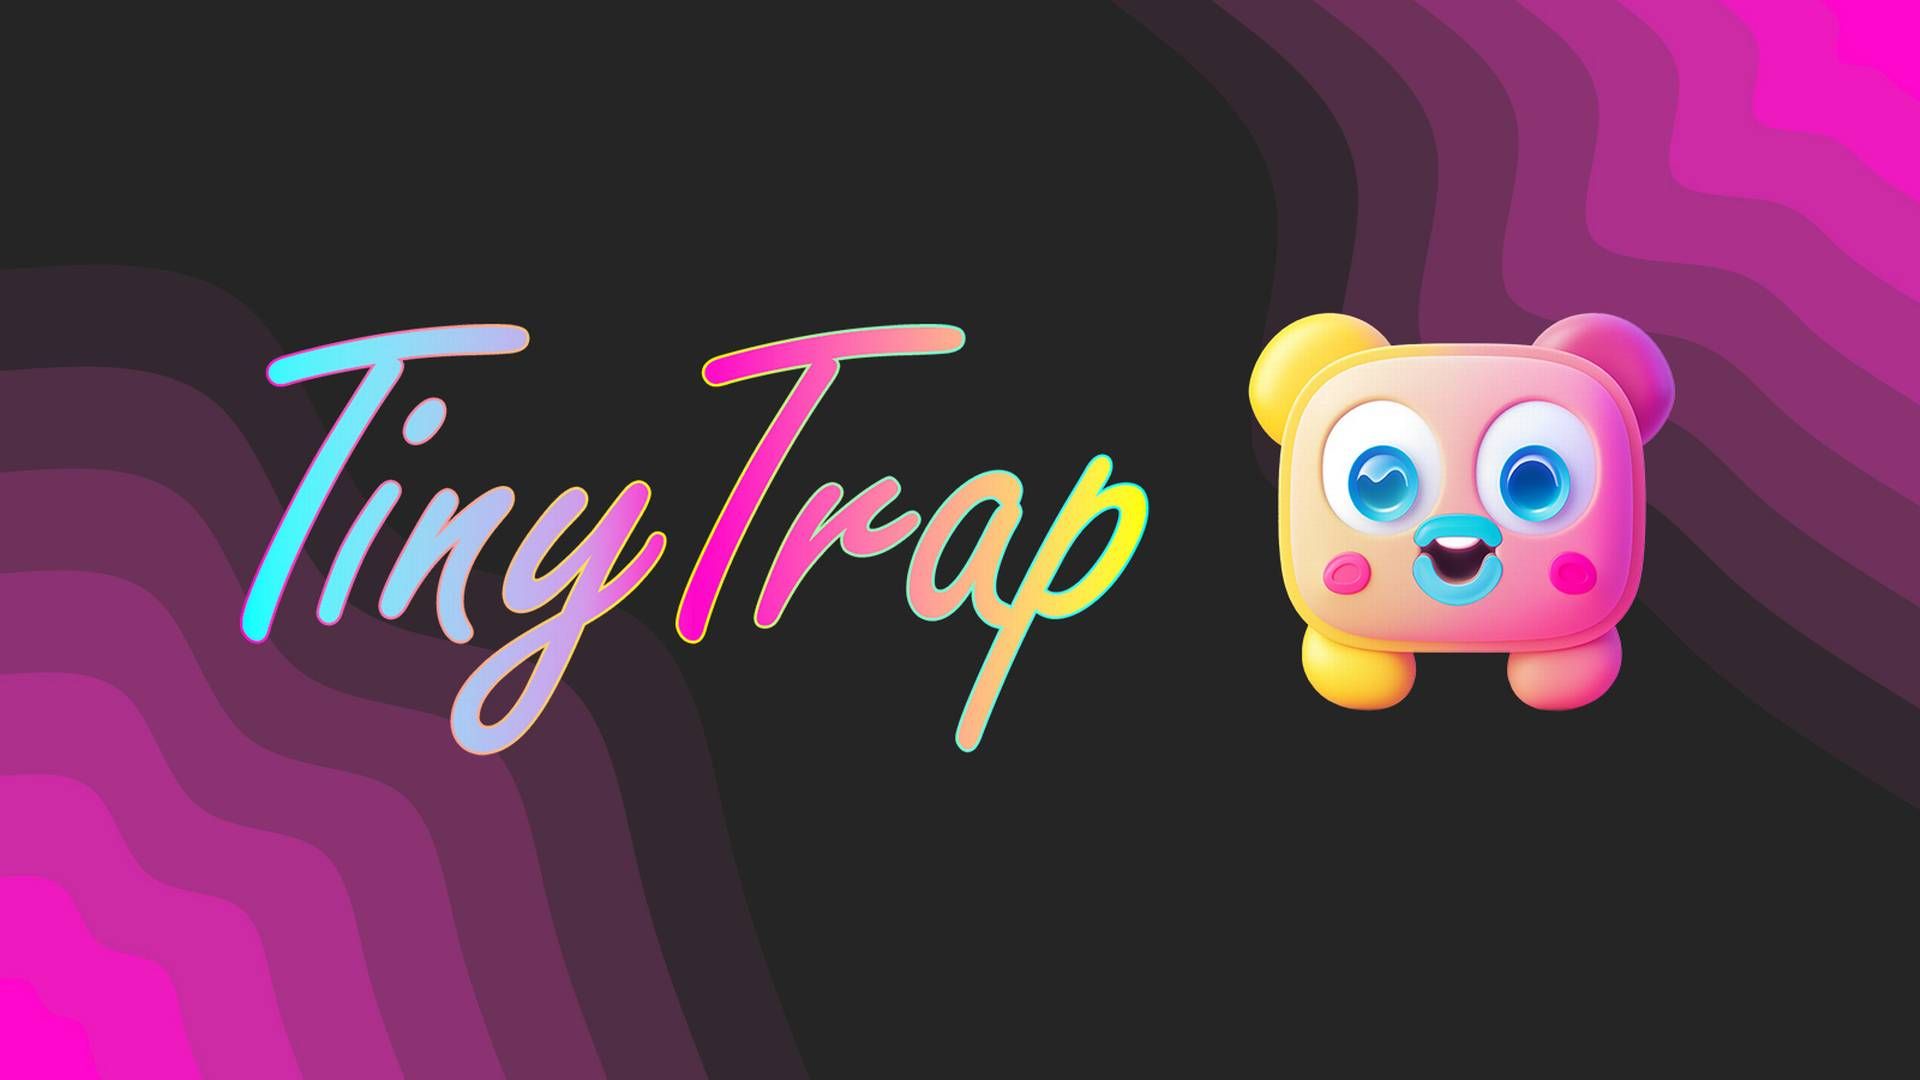 Børns Vilkår har i kampagnen "Tiny Trap" skrevet et falsk jobopslag for at sætte fokus på techvirksomheders ansvar for børn og unges trivsel online. | Foto: PR/Børns Vilkår